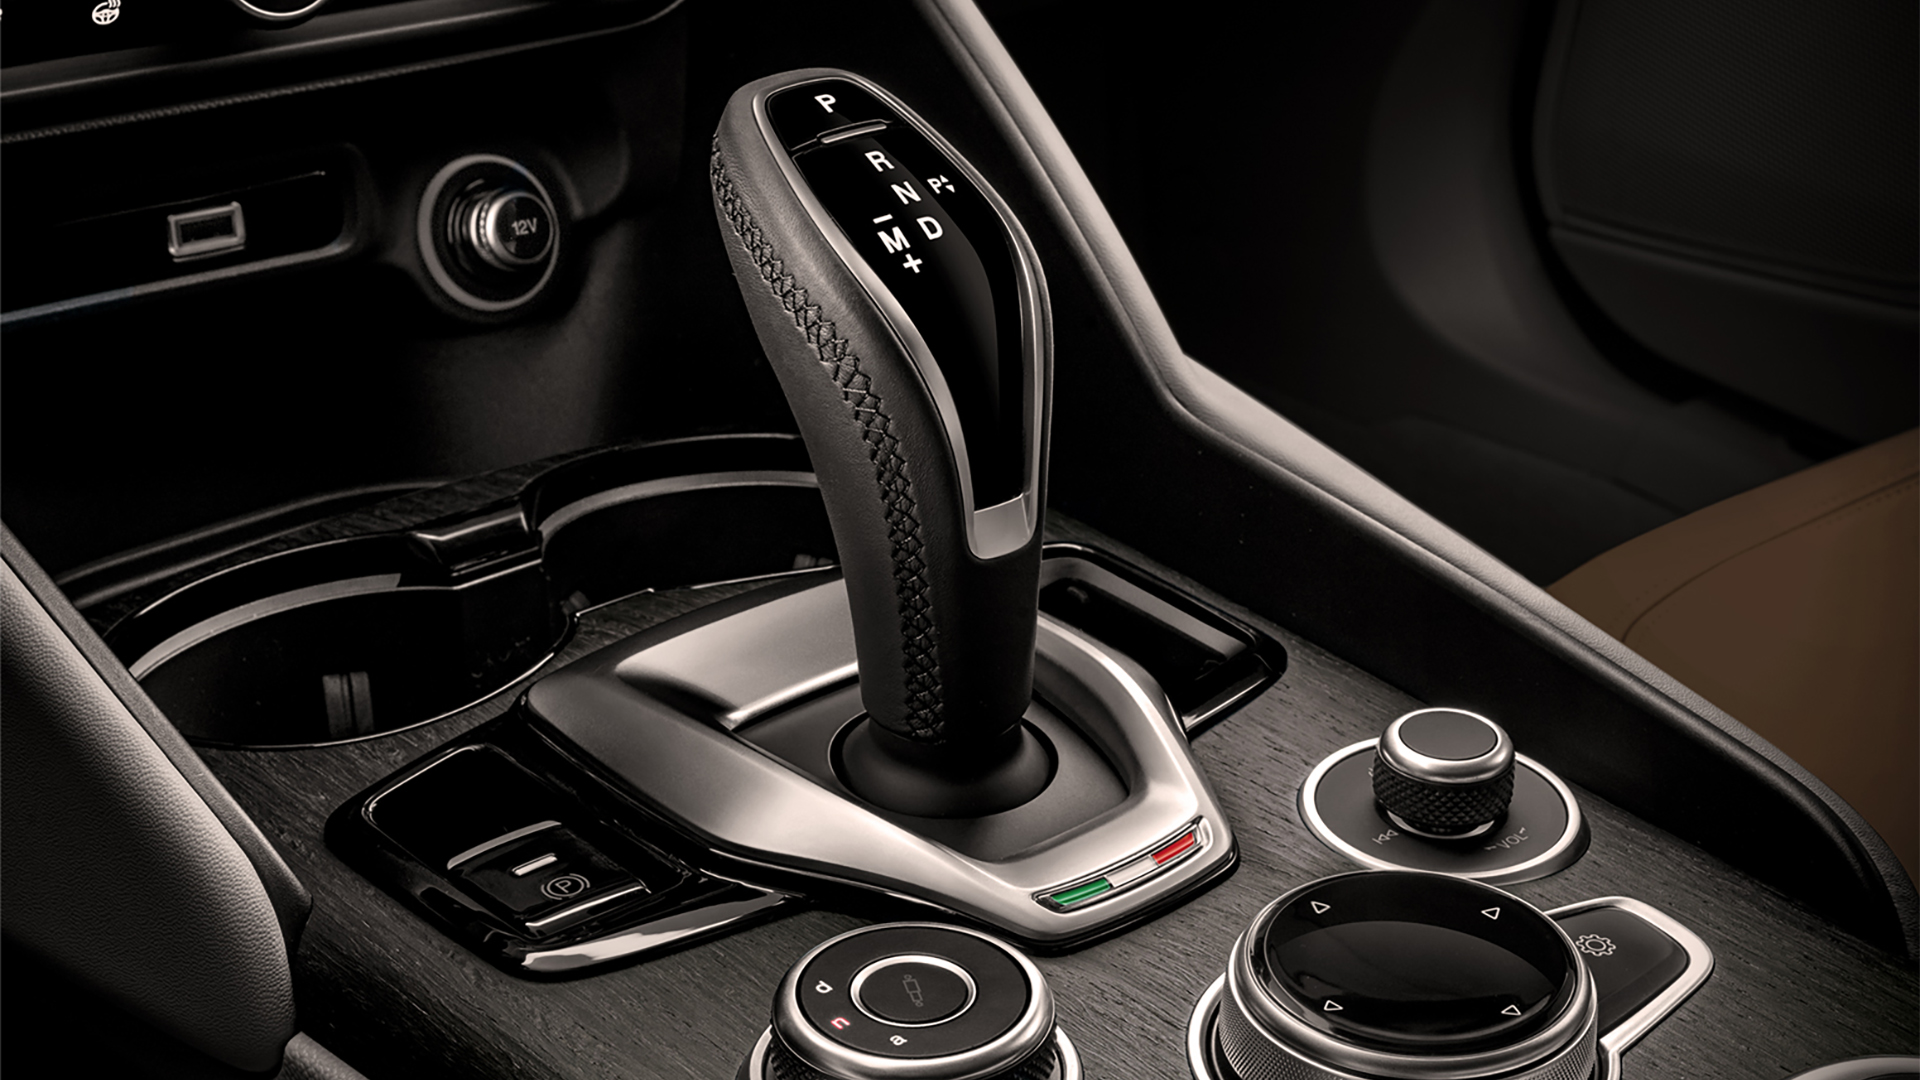 Los Alfa Romeo, más allá de tener levas en el volante, tienen accionamiento manual en la palanca, con el movimiento basado en la inercia del auto y el cuerpo del conductor